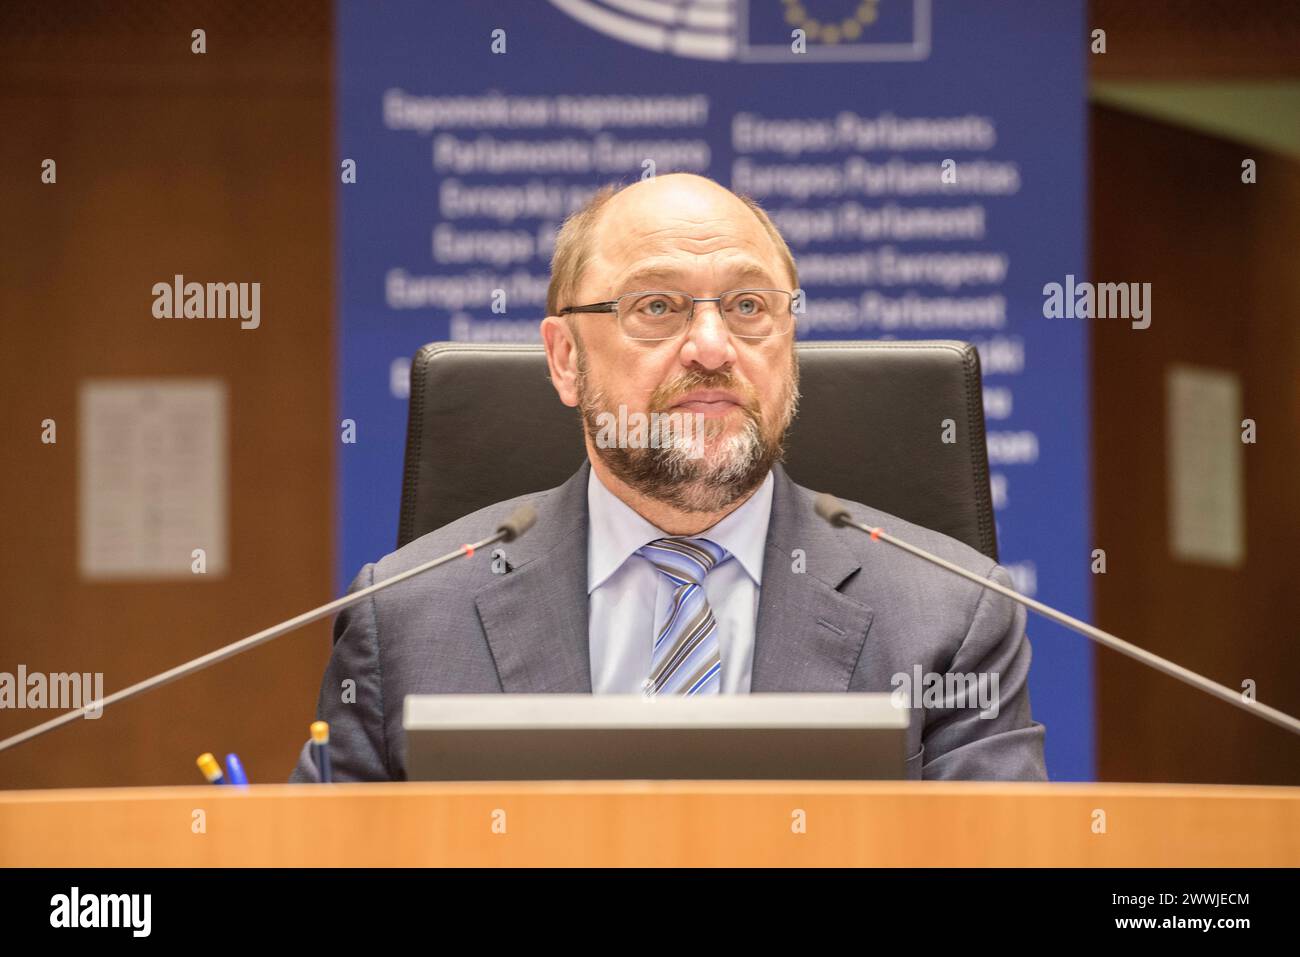 Presidente del Parlamento europeo EuroPar, Bruxelles. Il presidente tedesco del Parlamento europeo, Martin Schulz, al suo posto, durante la seduta plenaria del 24 febbraio 2016. Shulz è anche membro della Sozialdemokratische Partei Deutschlands o SPD. Brussel parlamentare europeo, Place du le Brussel Belgie Copyright: XGuidoxKoppesx Foto Stock